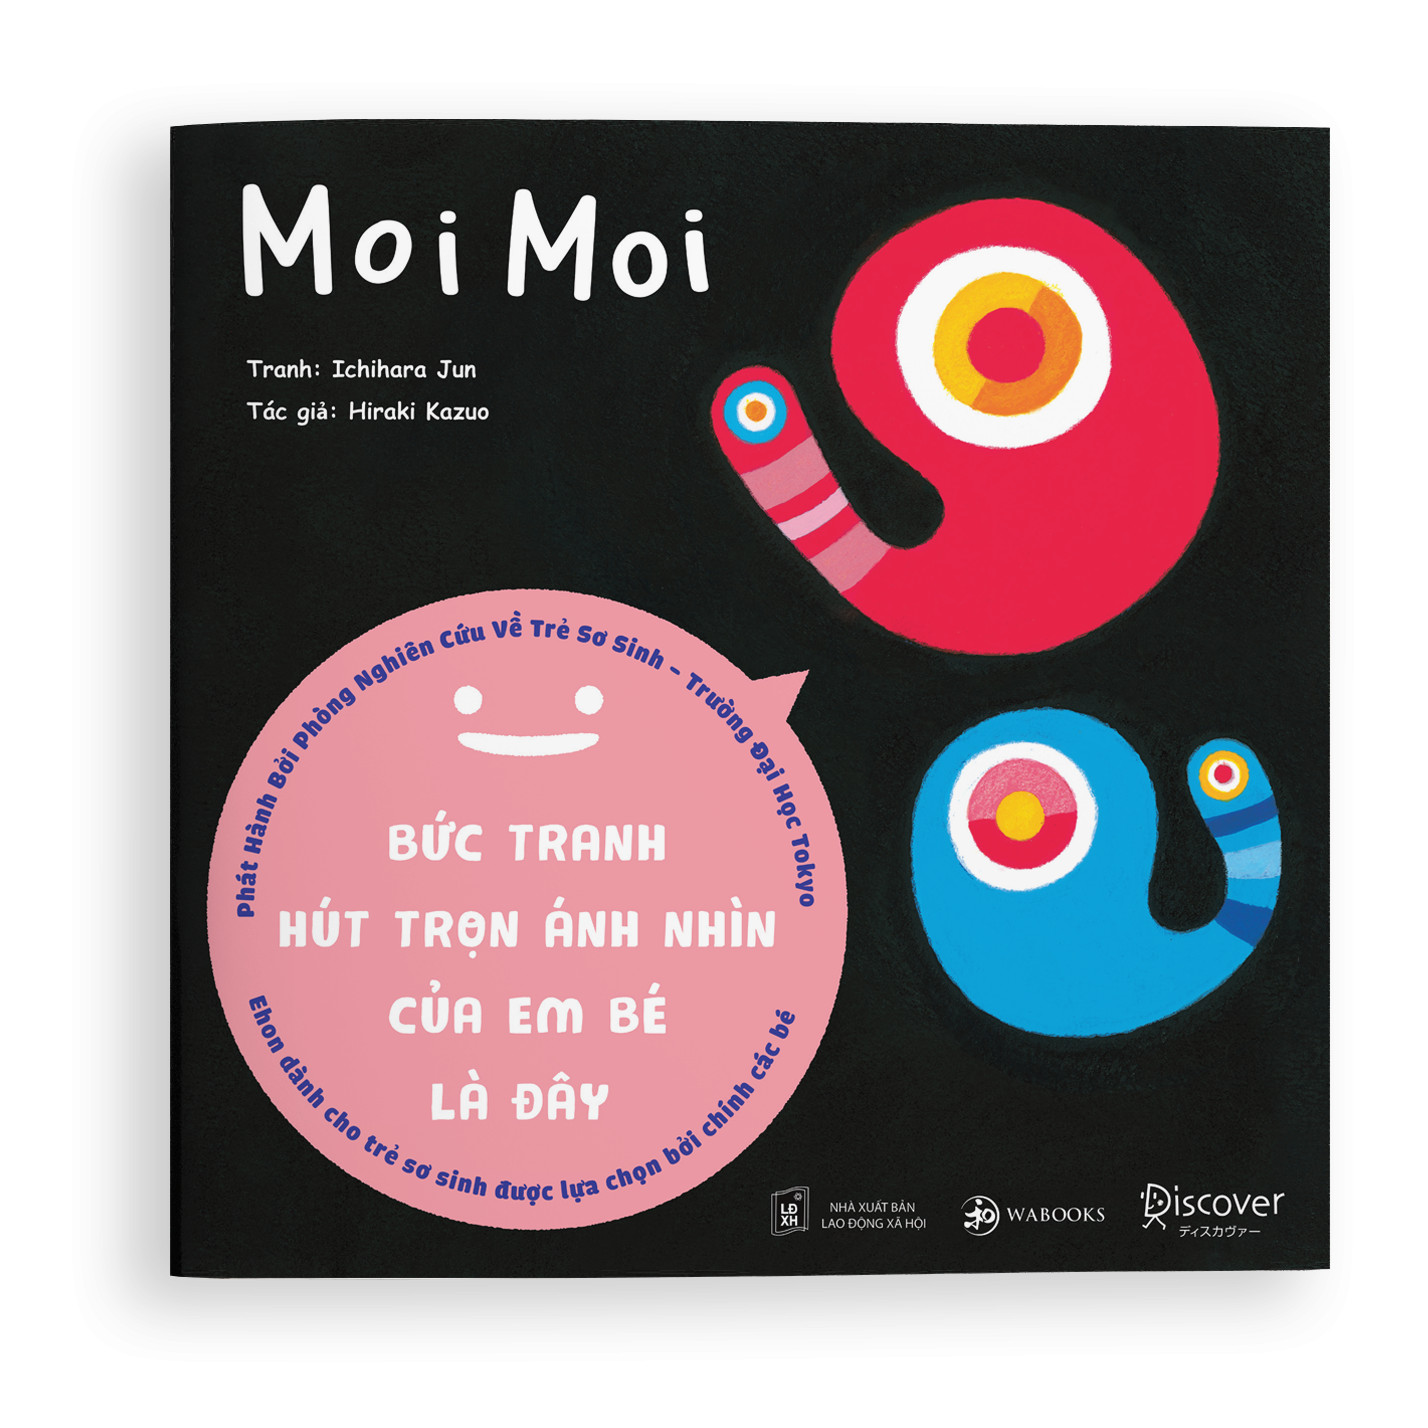 Combo 4 cuốn Sách Ehon Moi Moi - Giúp các em bé ngừng khóc - Đồ vật Thìa Nhỏ, Cốc nhỏ, Bát nhỏ, đĩa nhỏ